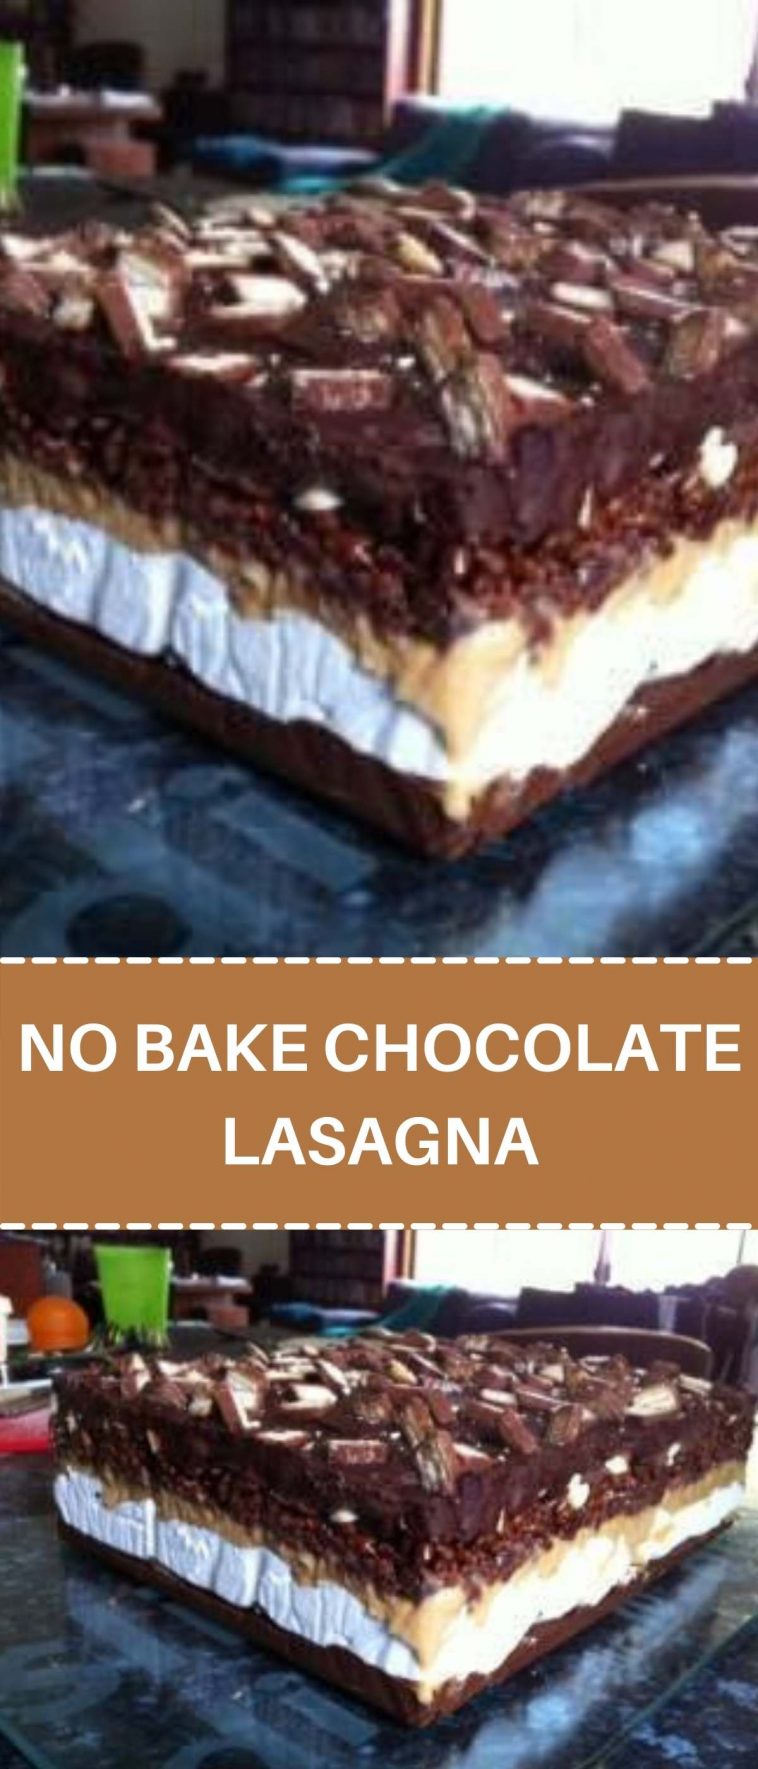 NO BAKE CHOCOLATE LASAGNA